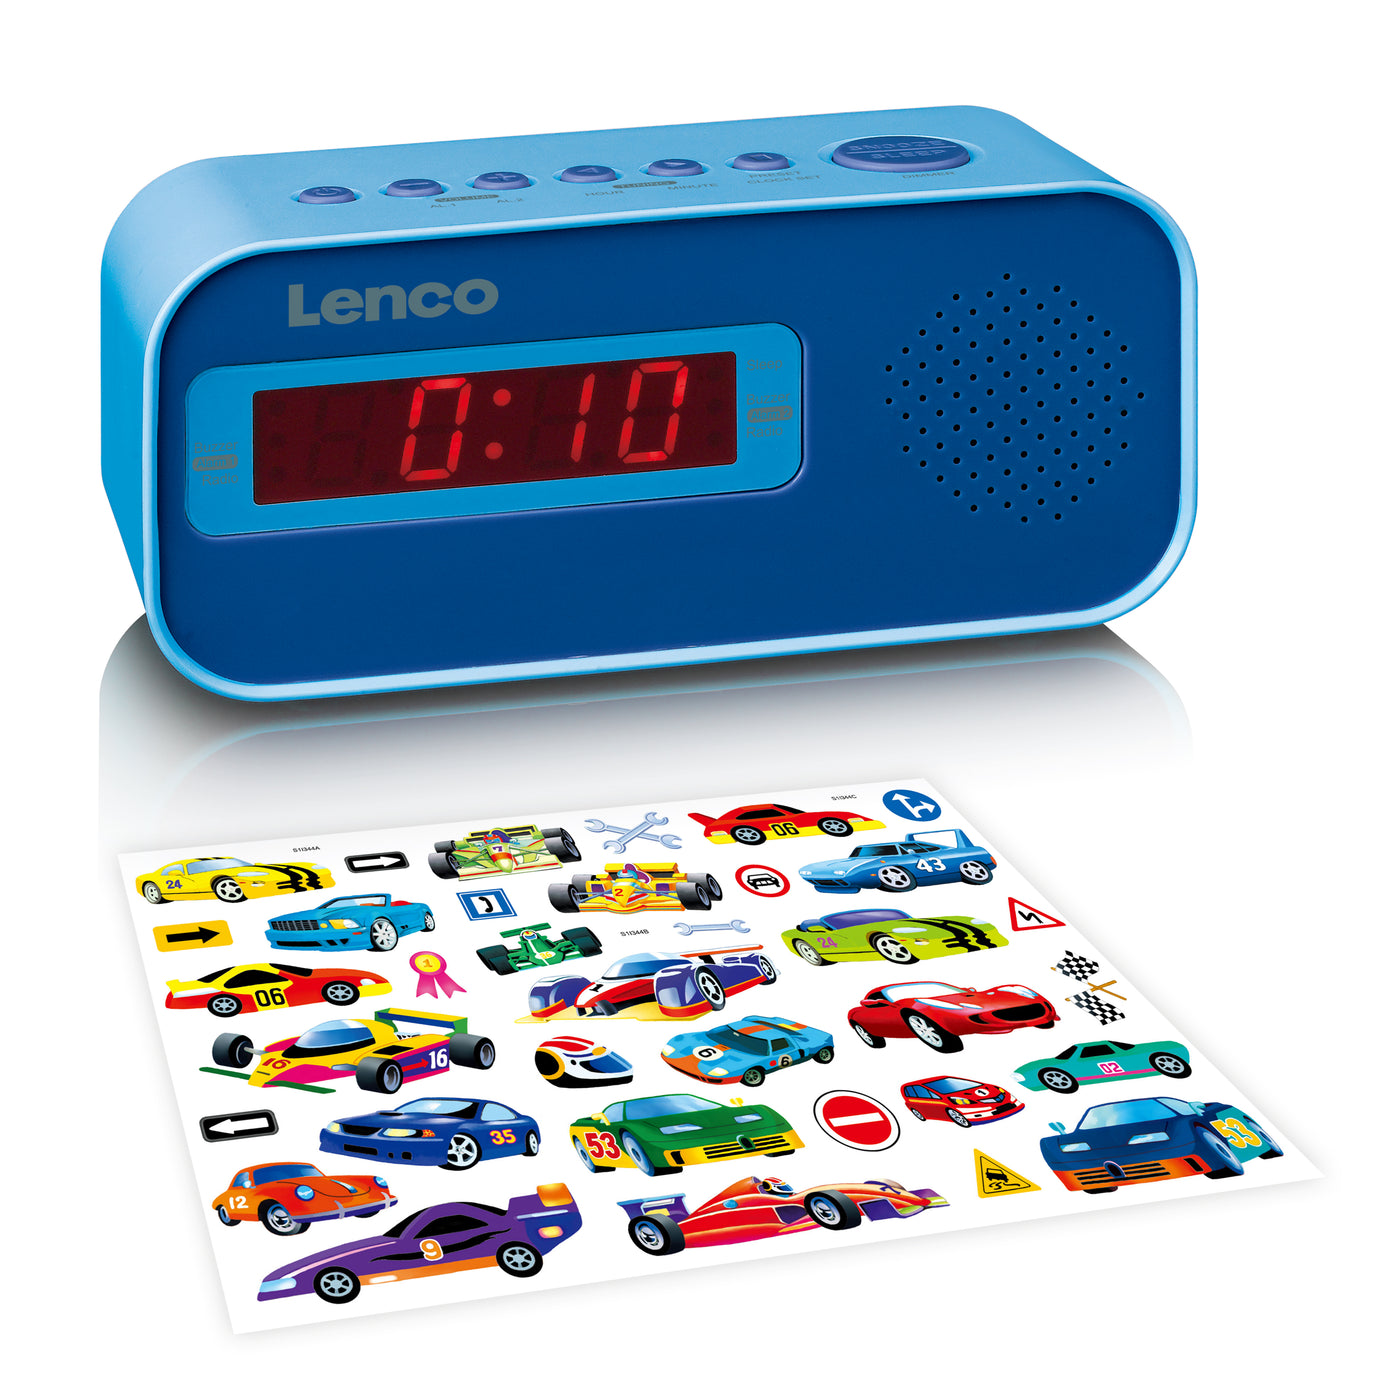 Lenco CR-205BU - Radio-réveil avec jeu d'autocollants - Bleu